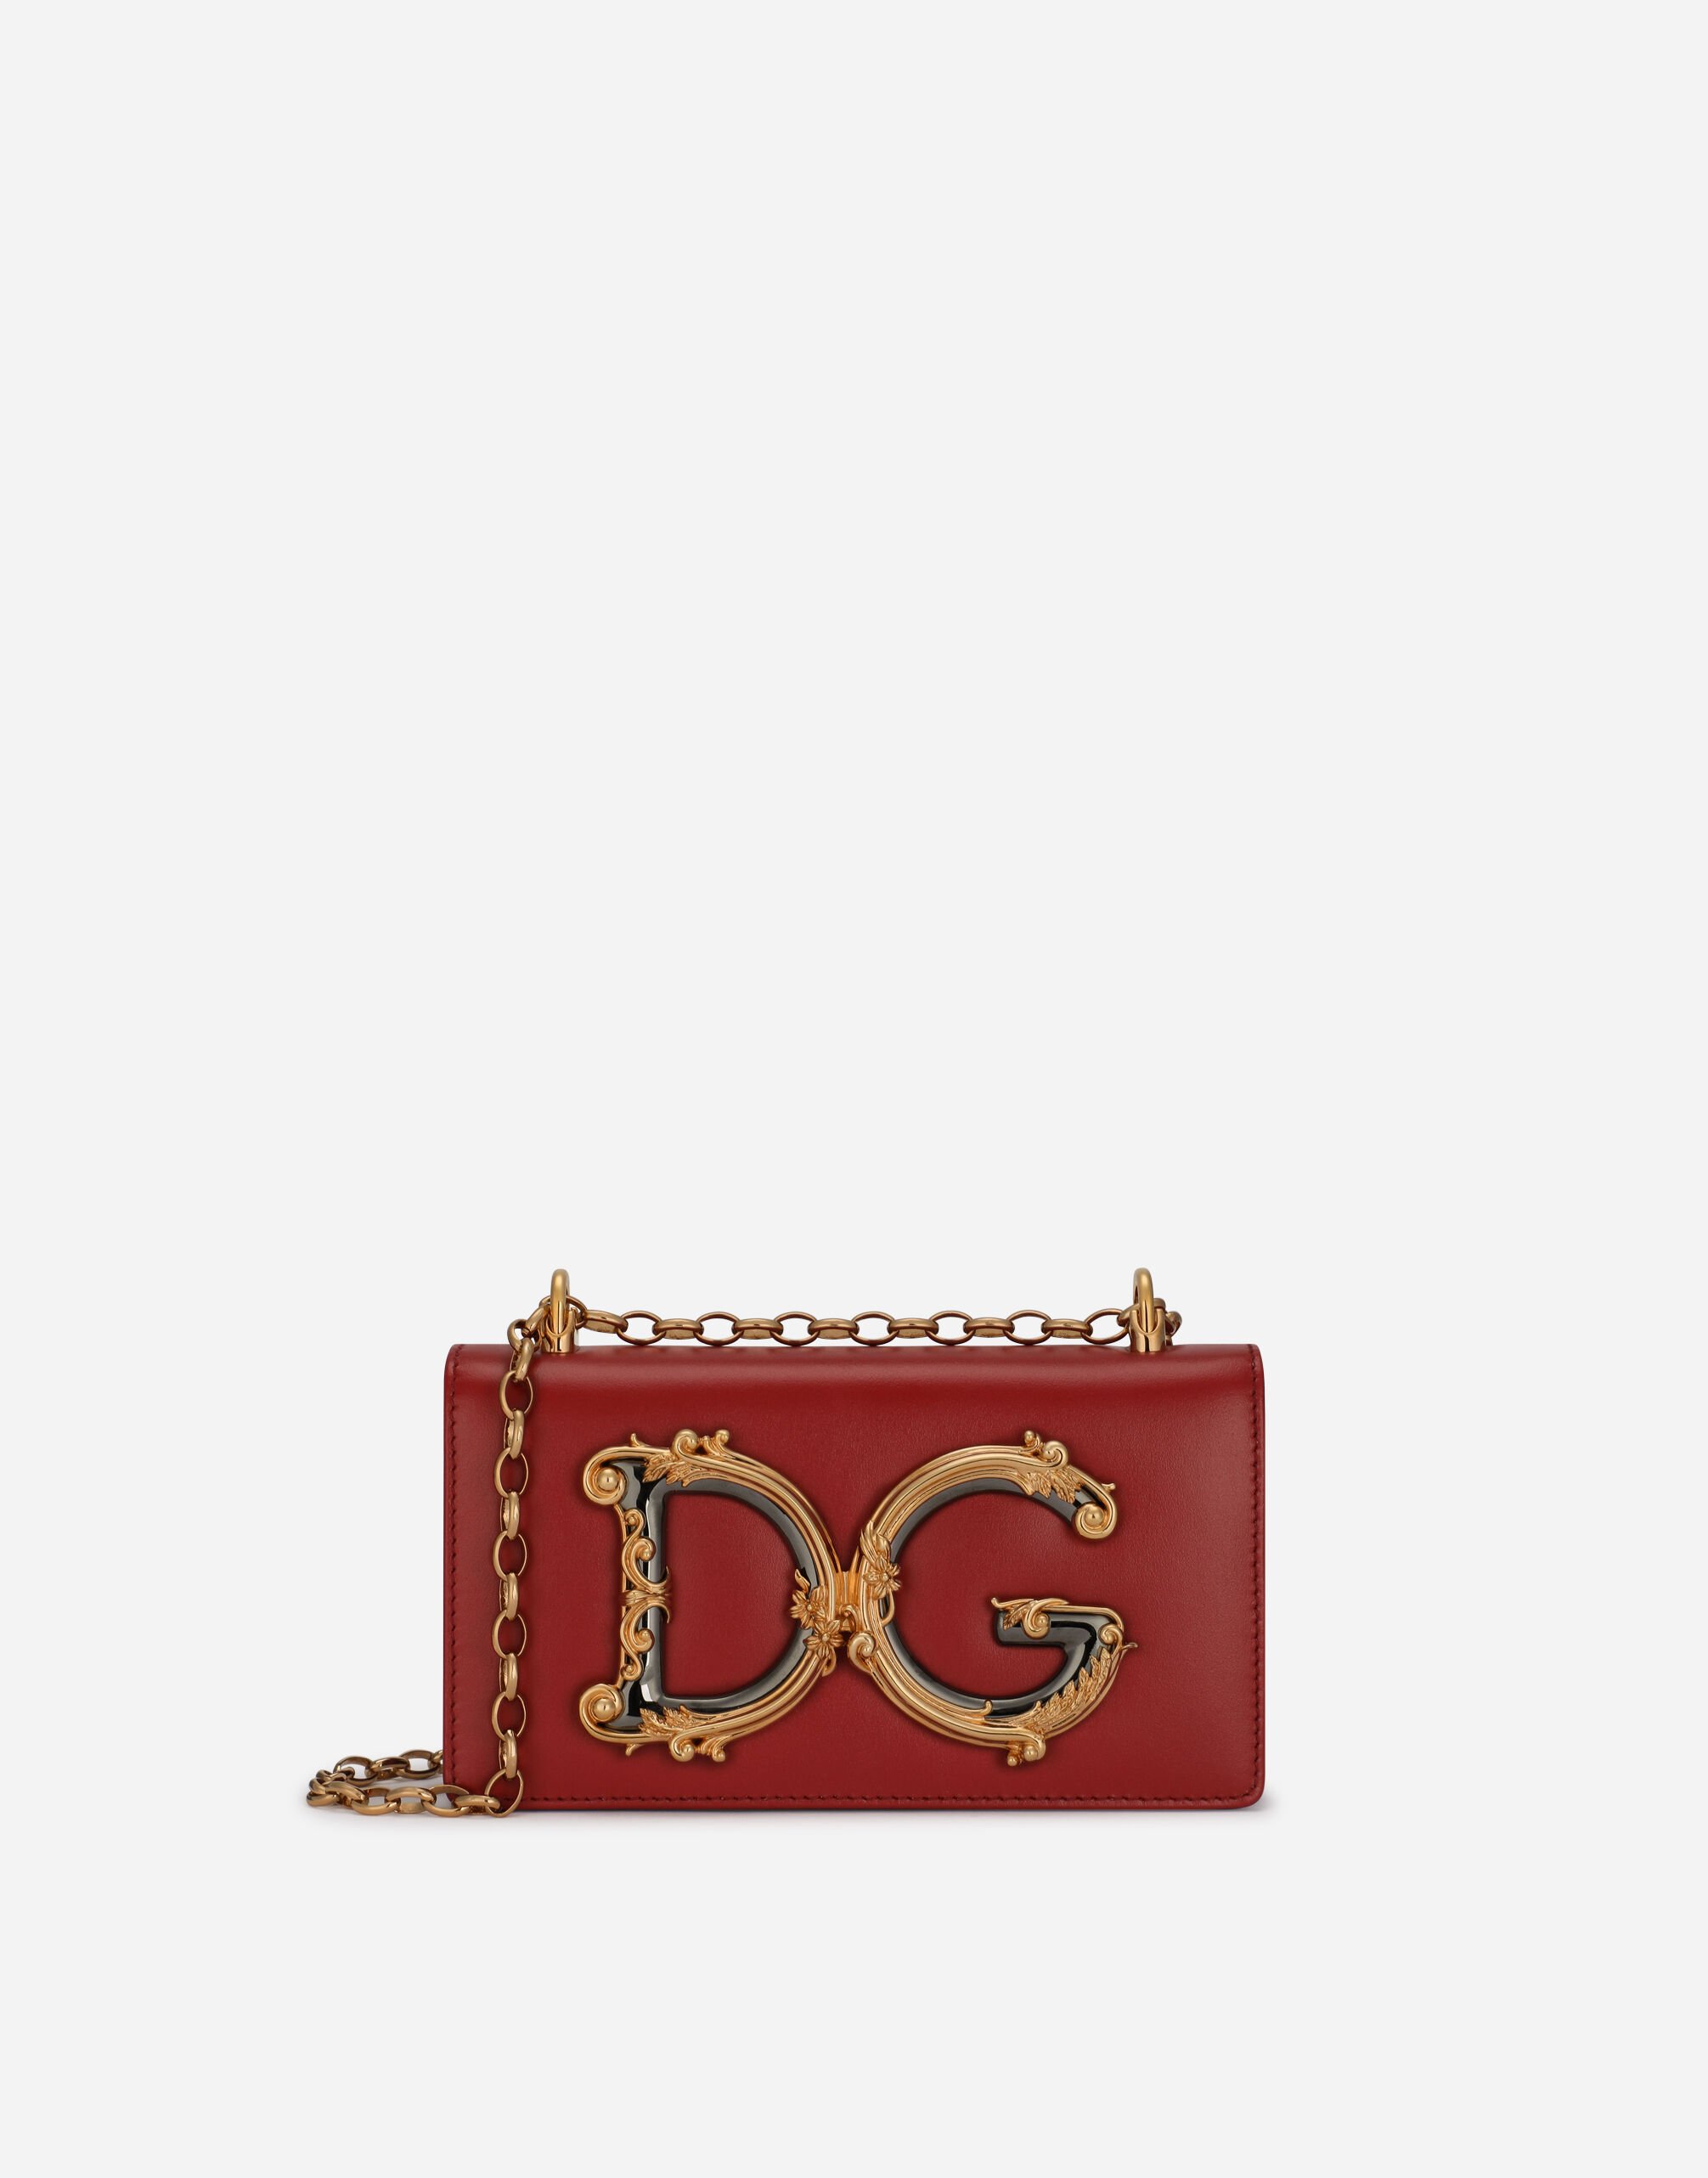 Dolce & Gabbana Phone Bag DG Girls aus Kalbsleder ROSA BB6003A1001